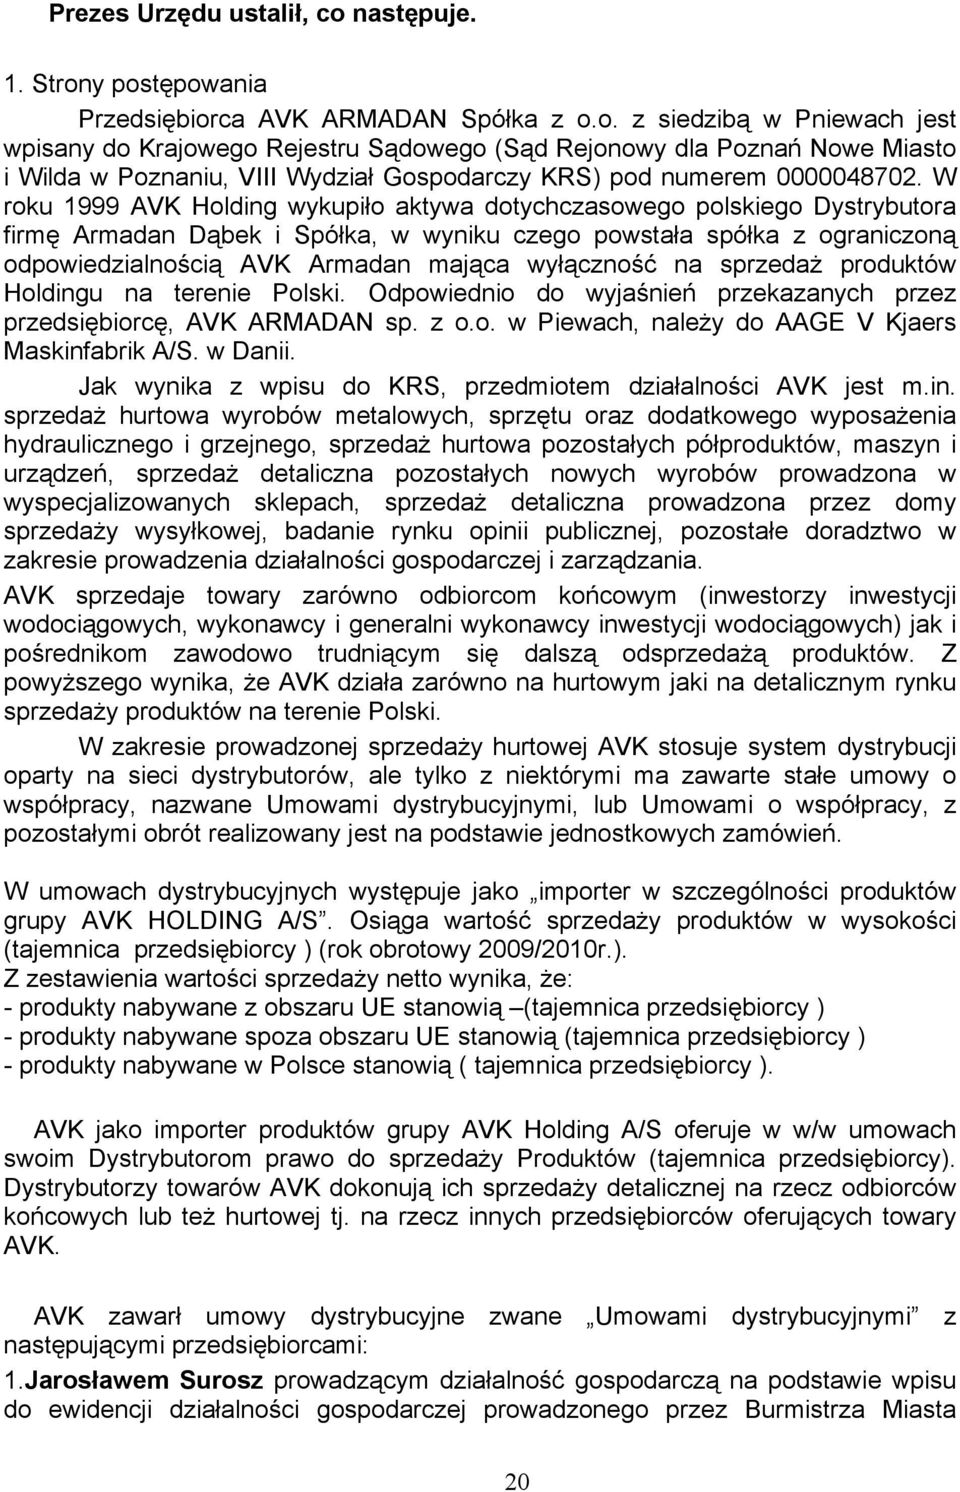 W roku 1999 AVK Holding wykupiło aktywa dotychczasowego polskiego Dystrybutora firmę Armadan Dąbek i Spółka, w wyniku czego powstała spółka z ograniczoną odpowiedzialnością AVK Armadan mająca